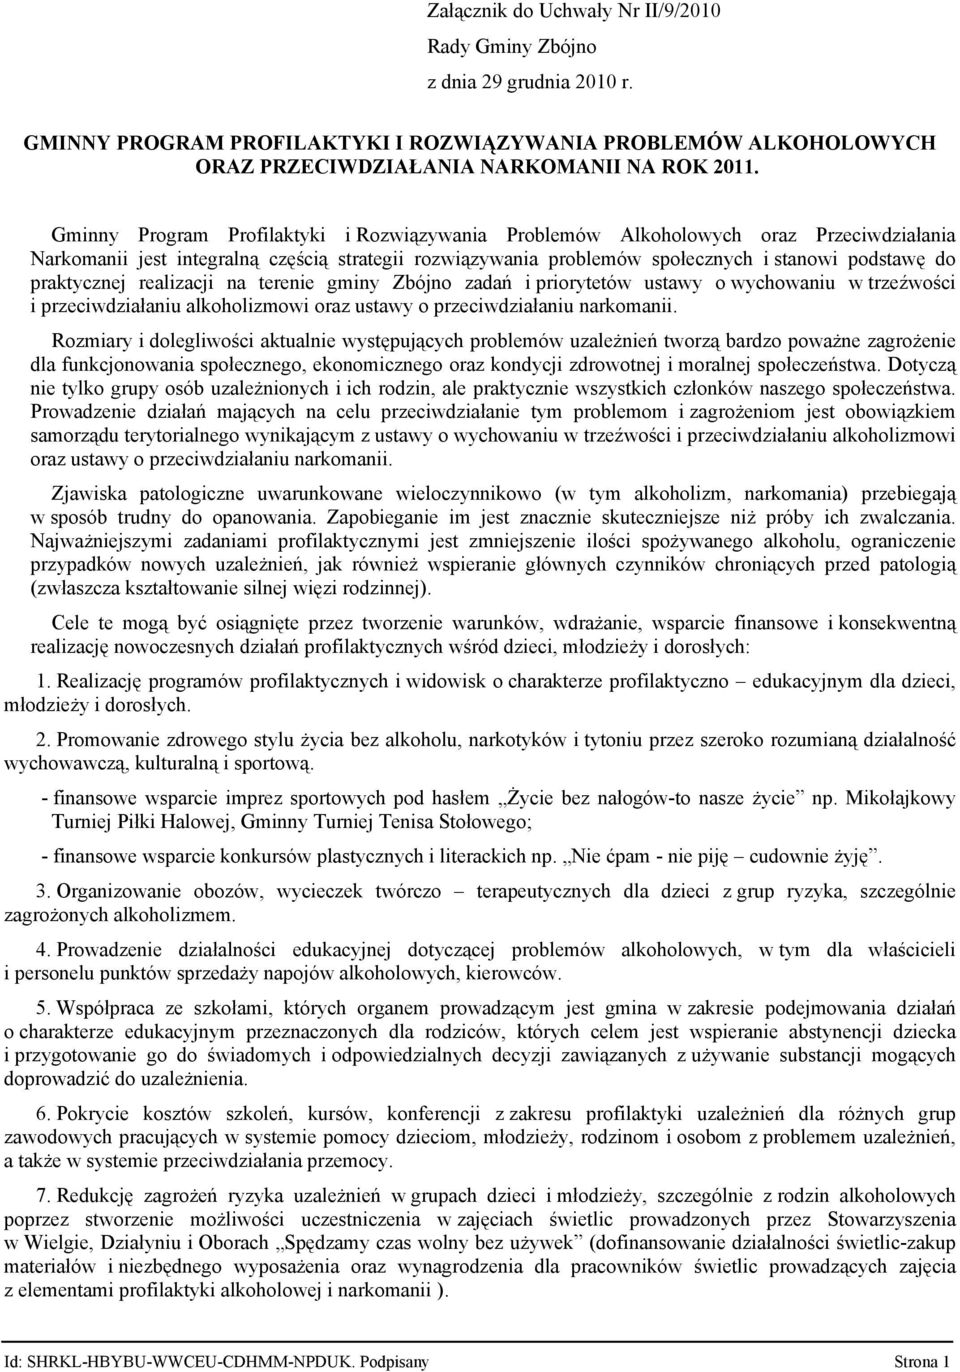 praktycznej realizacji na terenie gminy Zbójno zadań i priorytetów ustawy o wychowaniu w trzeźwości i przeciwdziałaniu alkoholizmowi oraz ustawy o przeciwdziałaniu narkomanii.